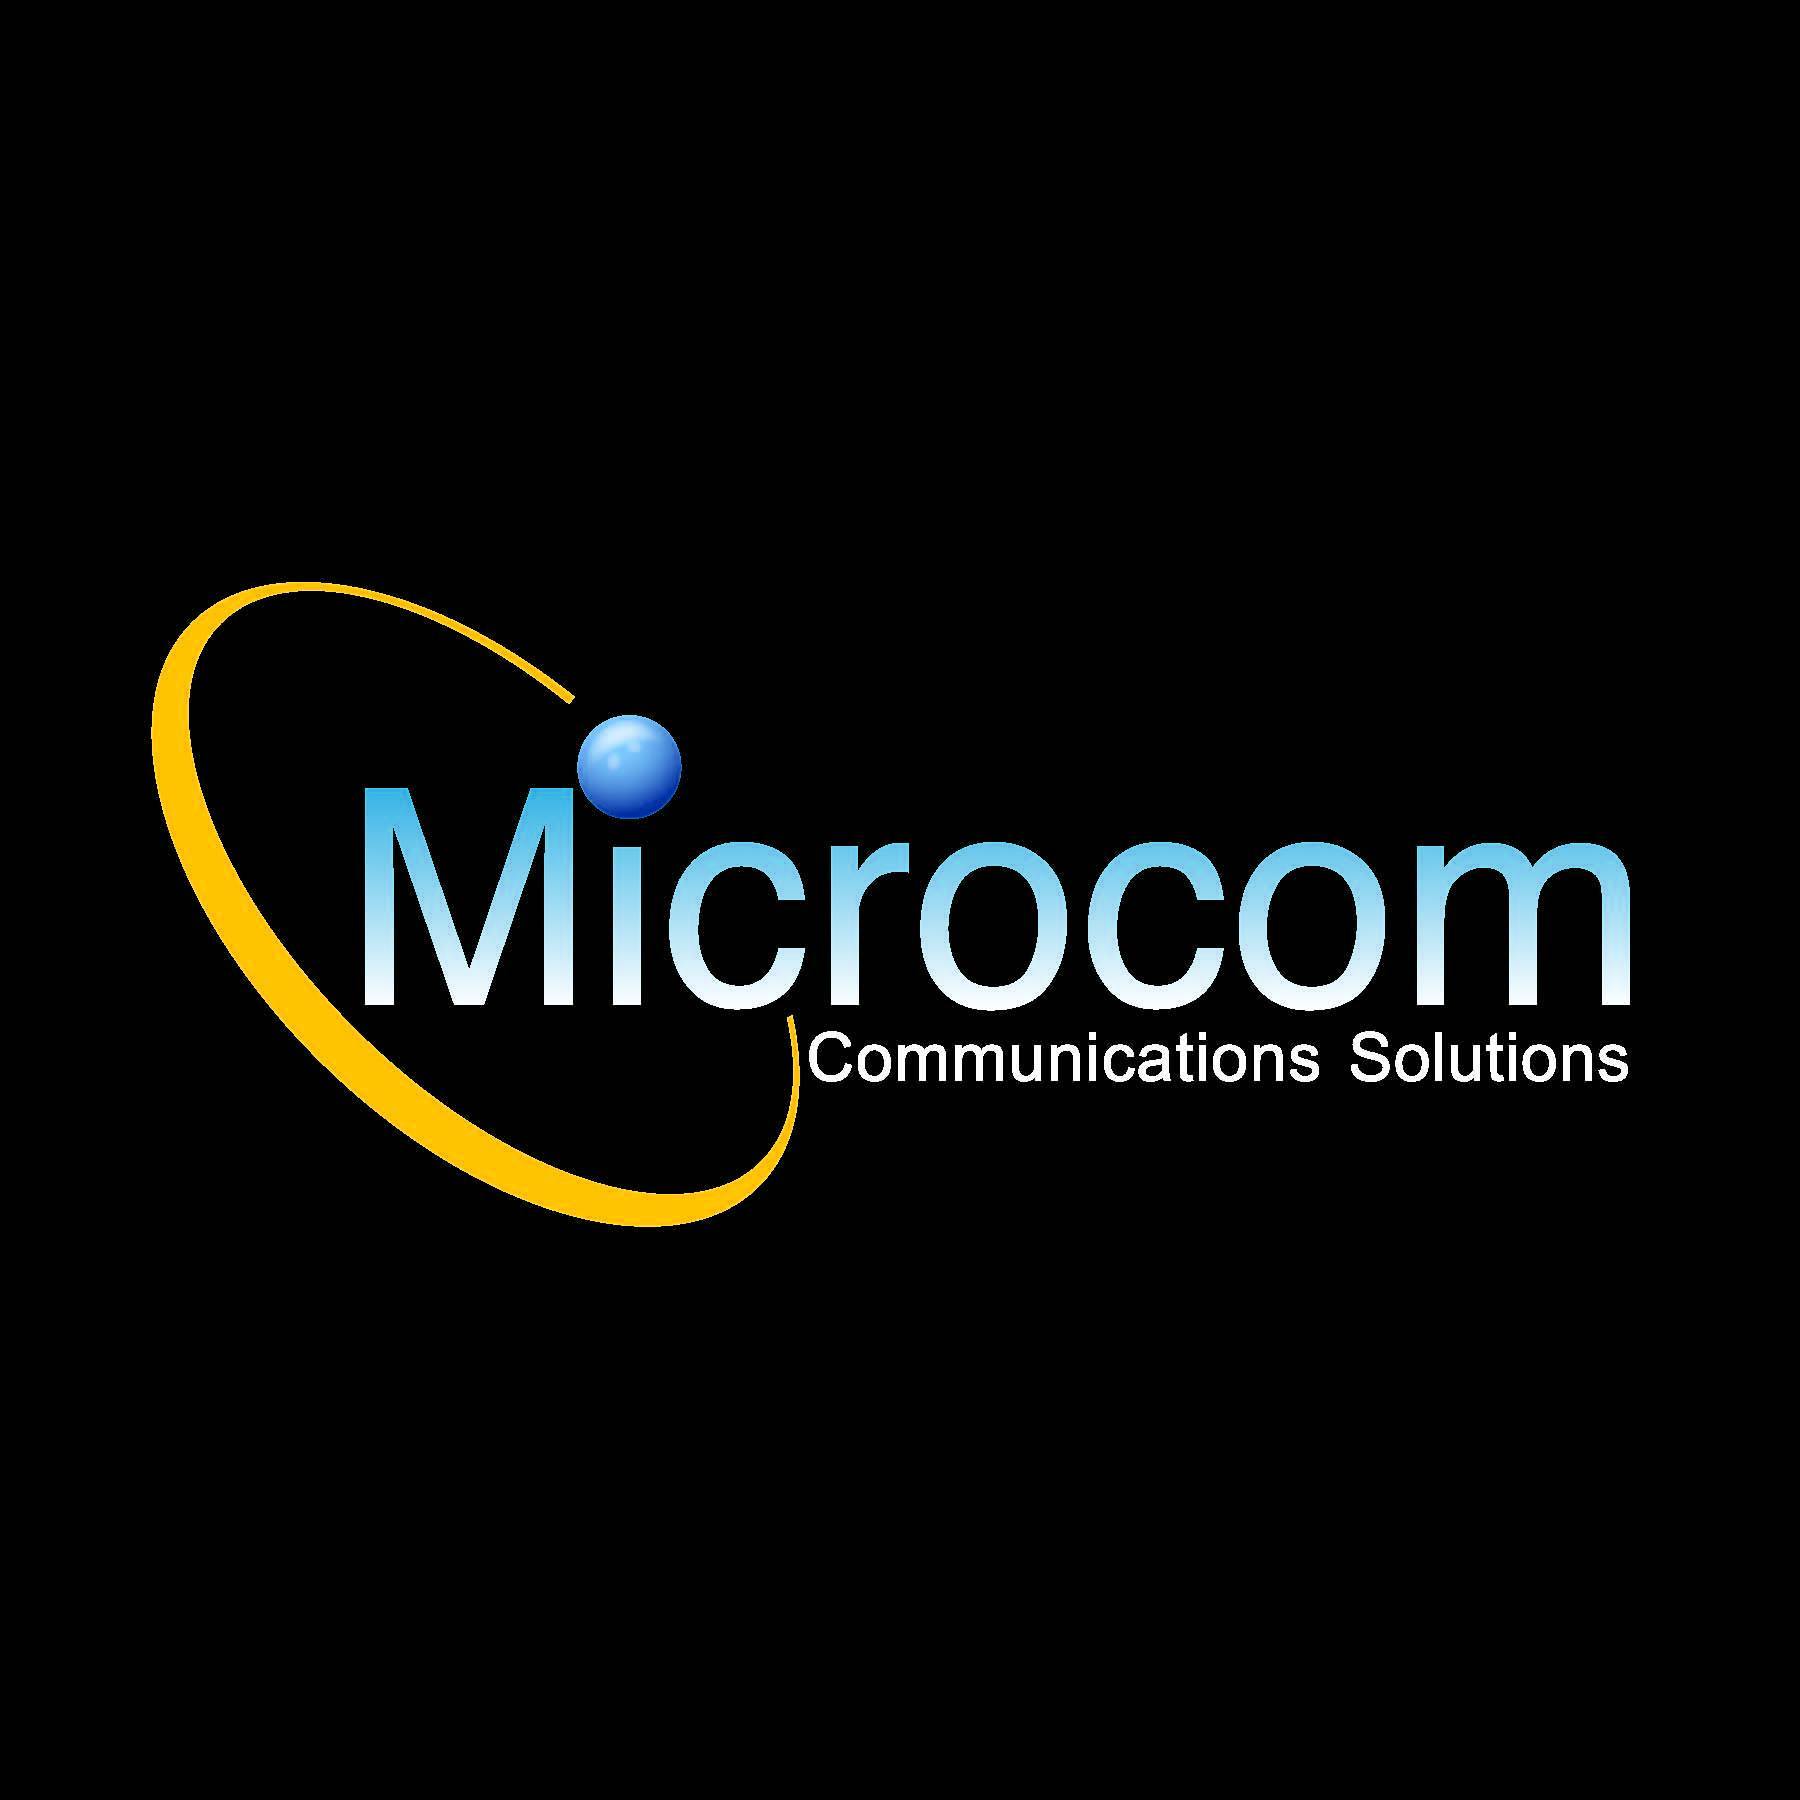 Microcom Communications